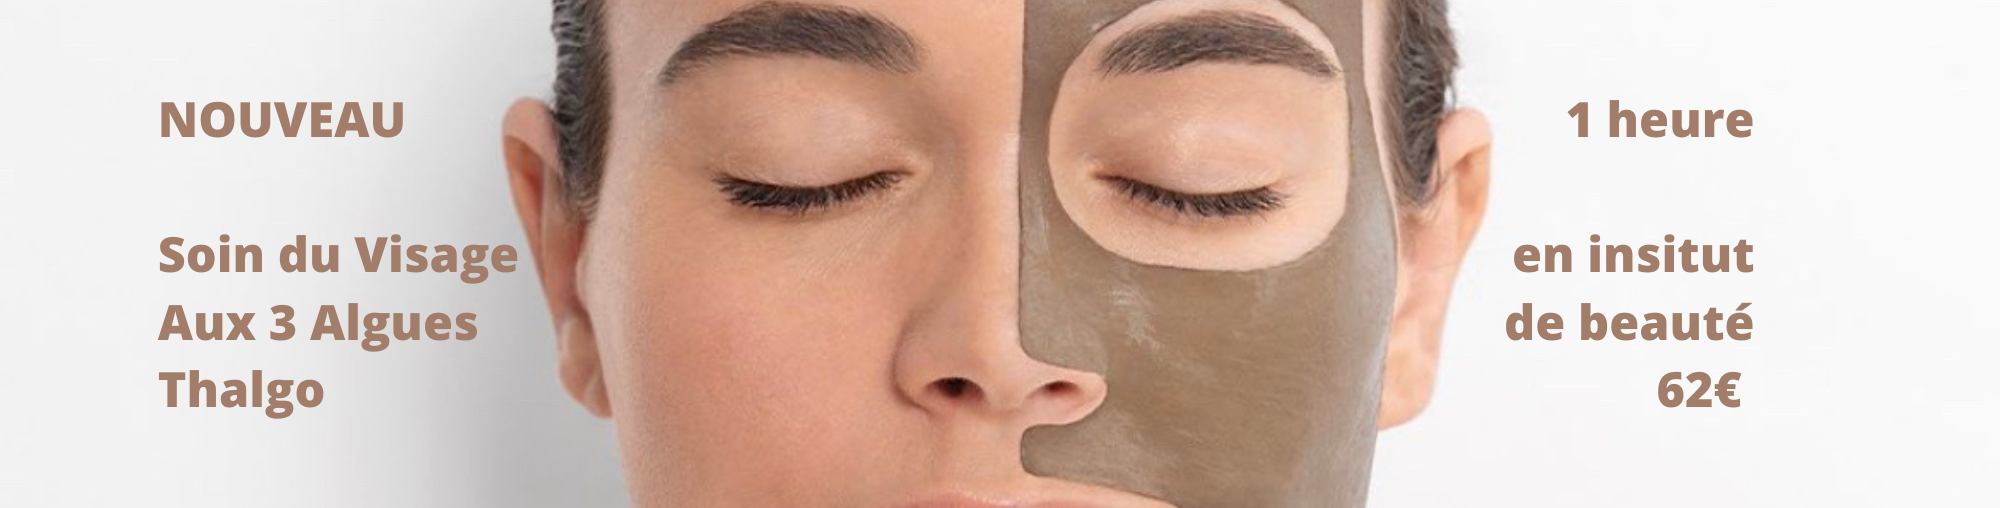 Aqualia Institut de beauté + Parapharmacie Les Flâneries - Votre brosse  nettoyante visage OFFERTE😉 avec Caudalie Pour un nettoyage parfait tout  en douceur